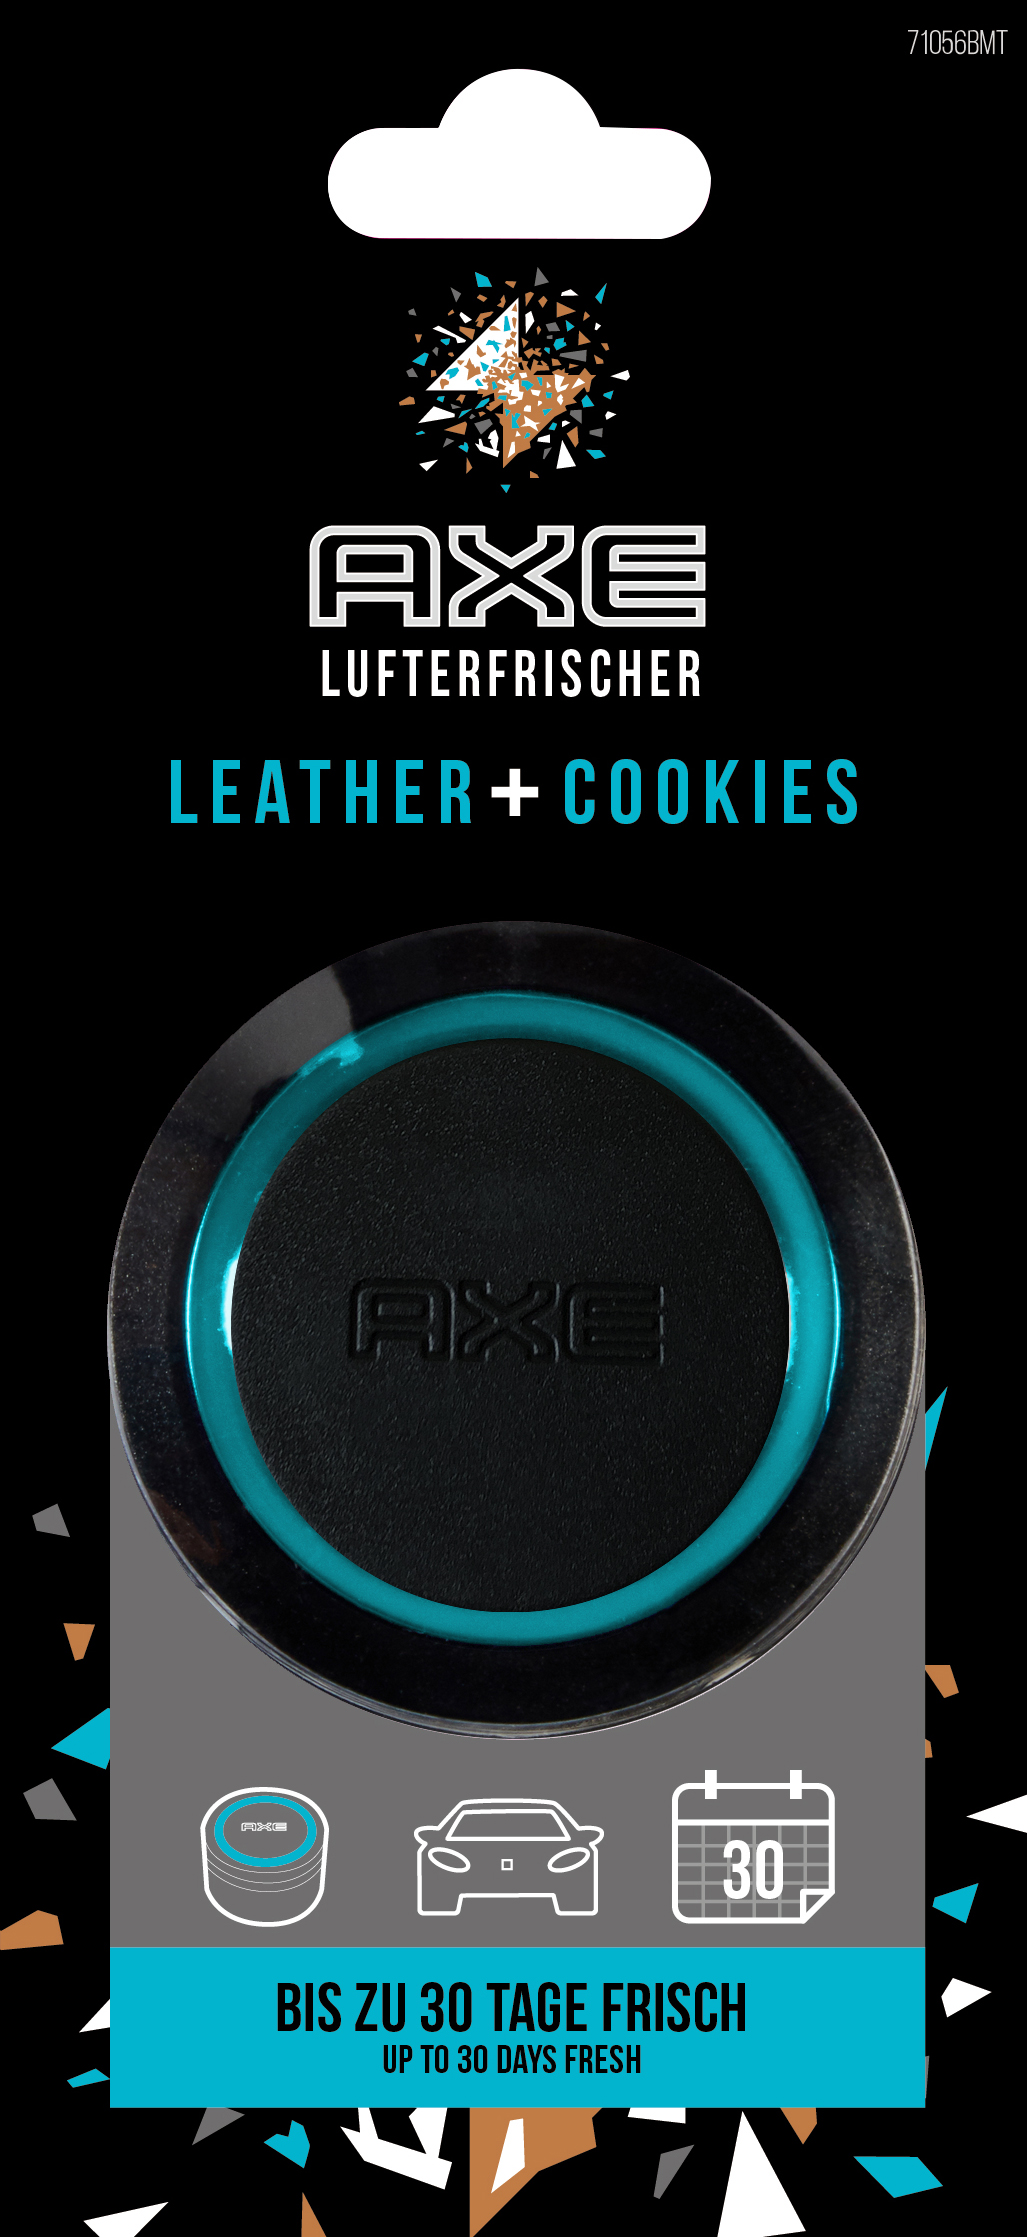 Gel Air - Collision Lufterfrischer, Leather&Cookies AXE Schwarz/Blau Can